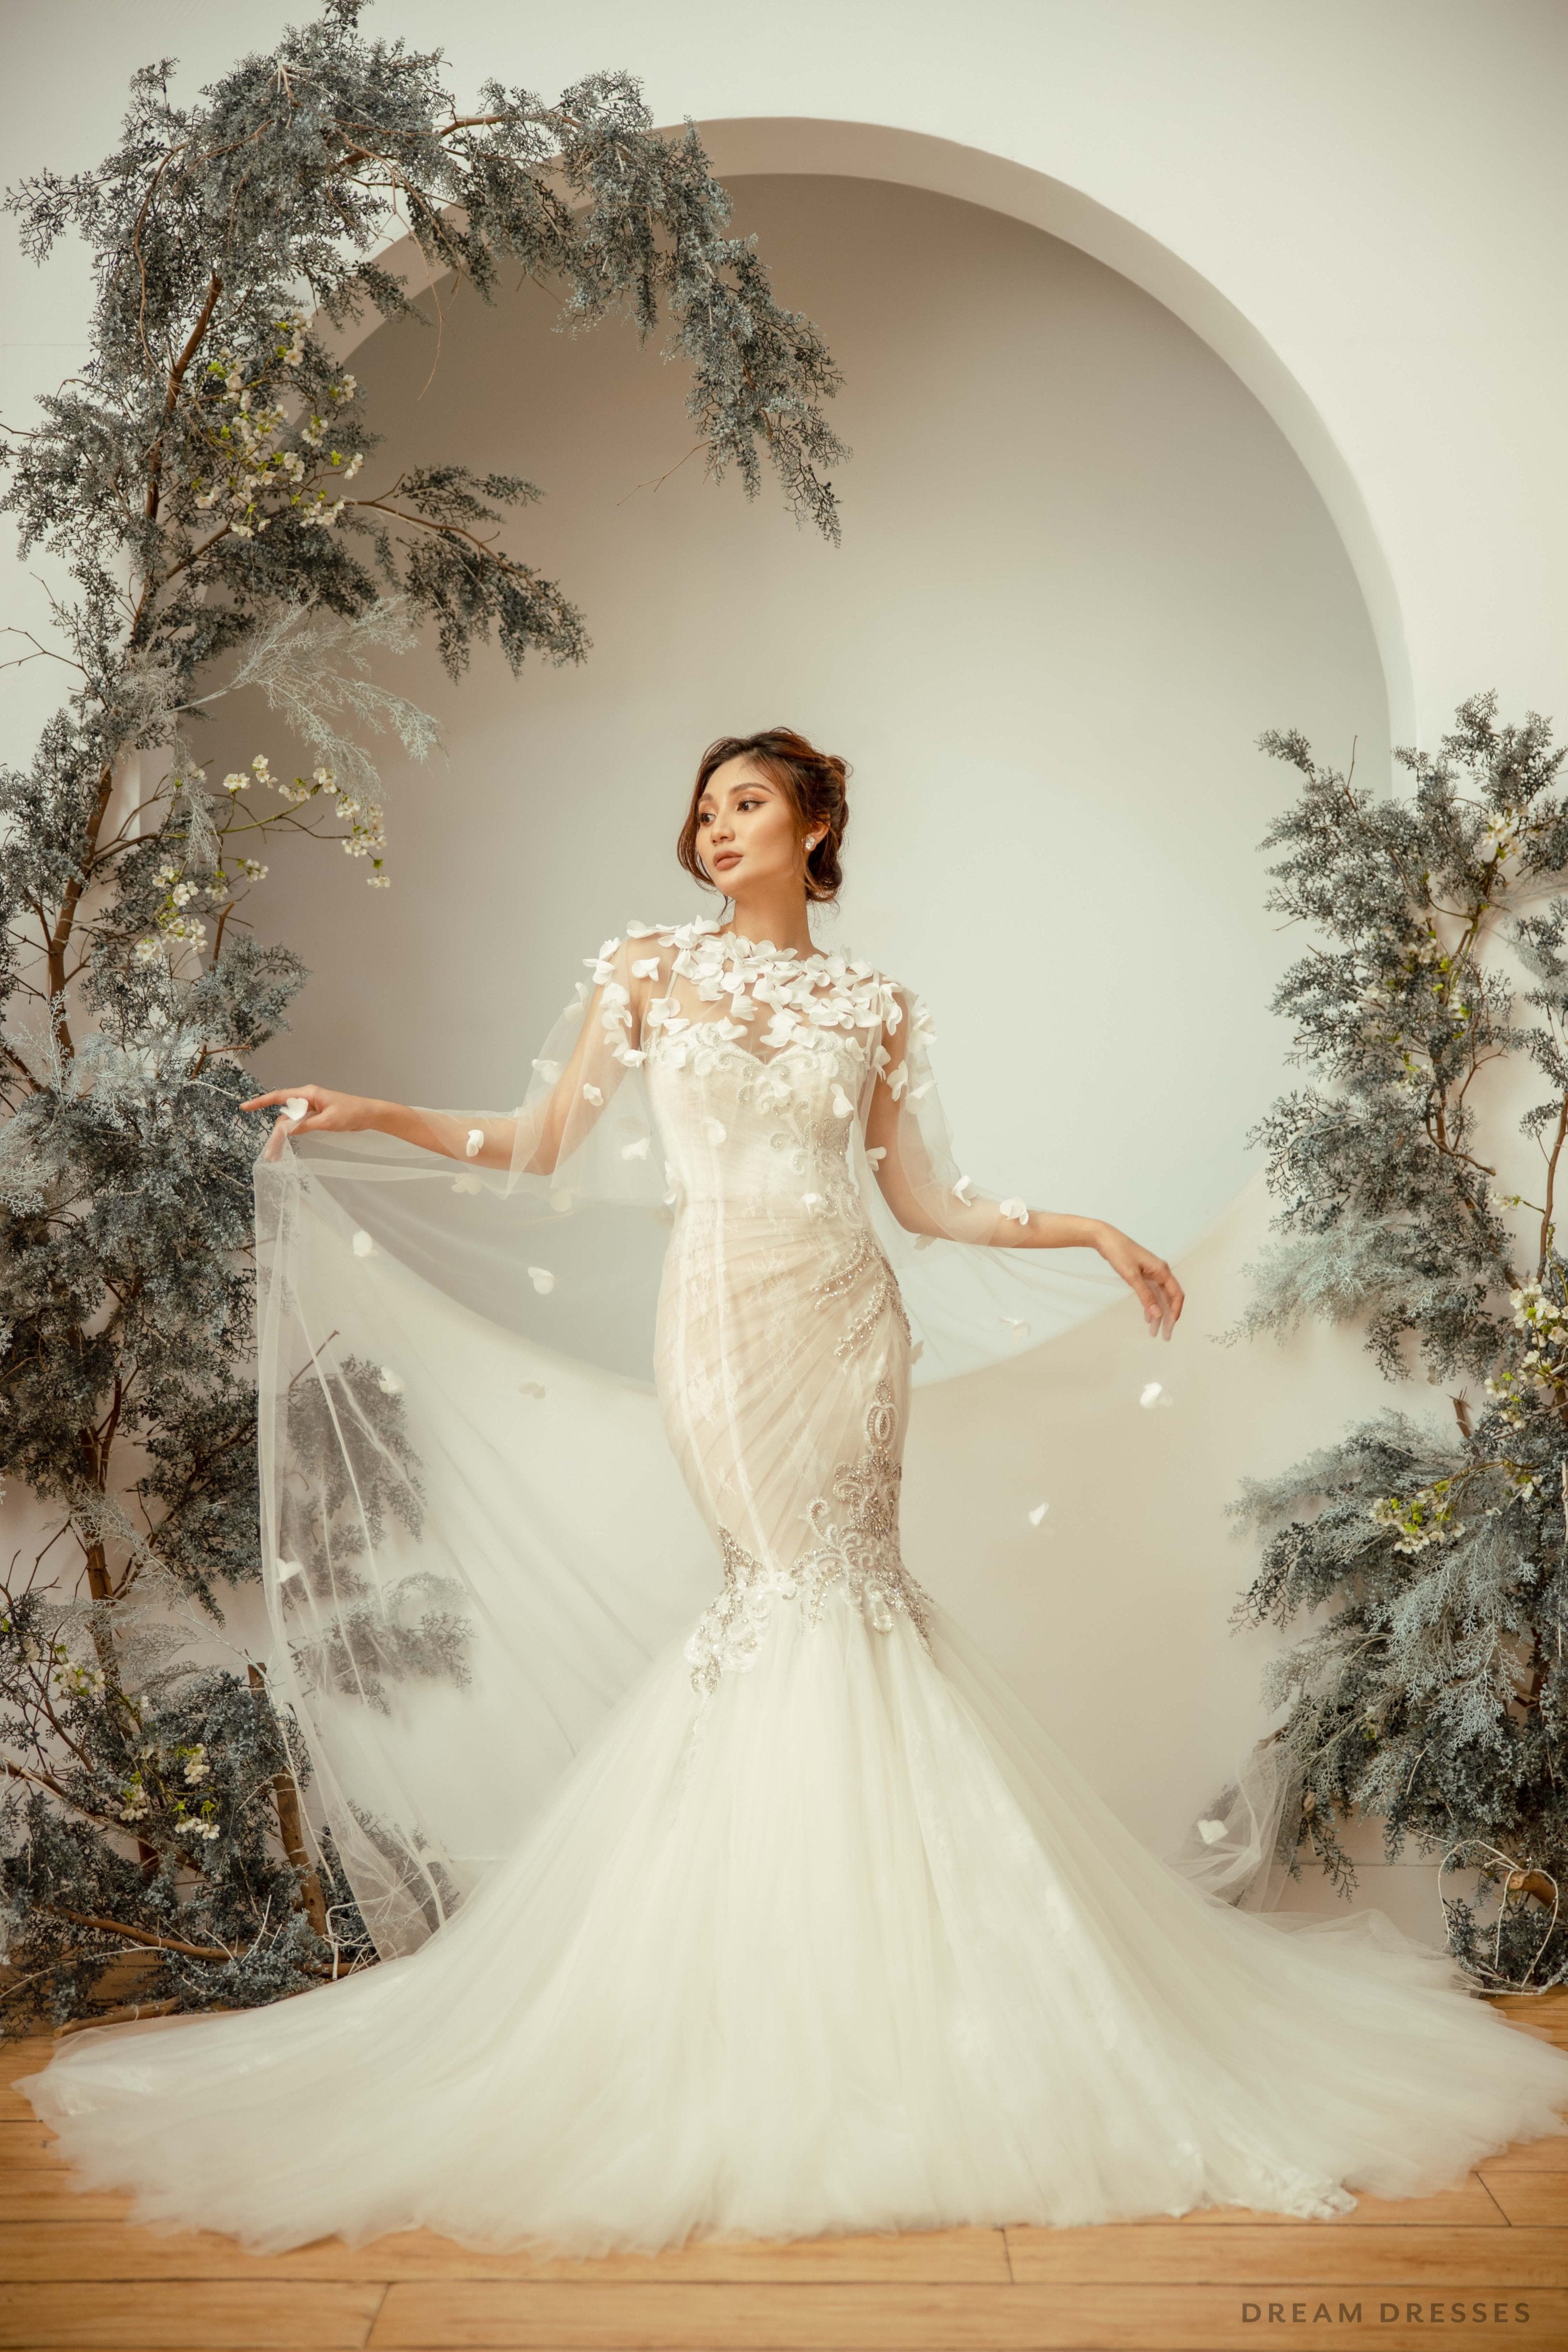 Bridal Cape Veil with 3D Floral Appliqué, Dream Dresses by P.M.N